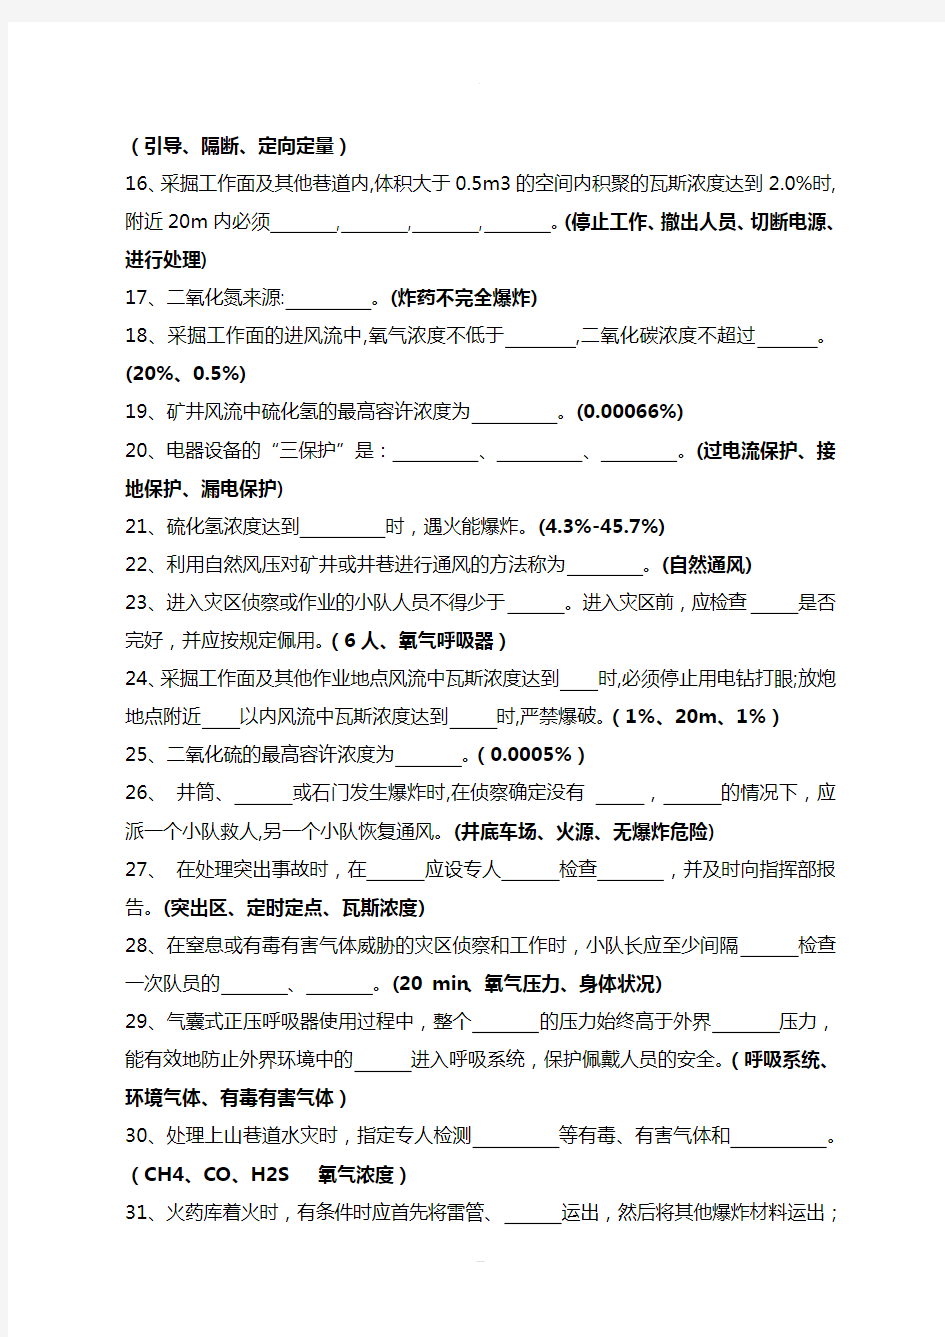 淮北矿业2013年一季度安全生产体系知识考试题库(救护消防大队)